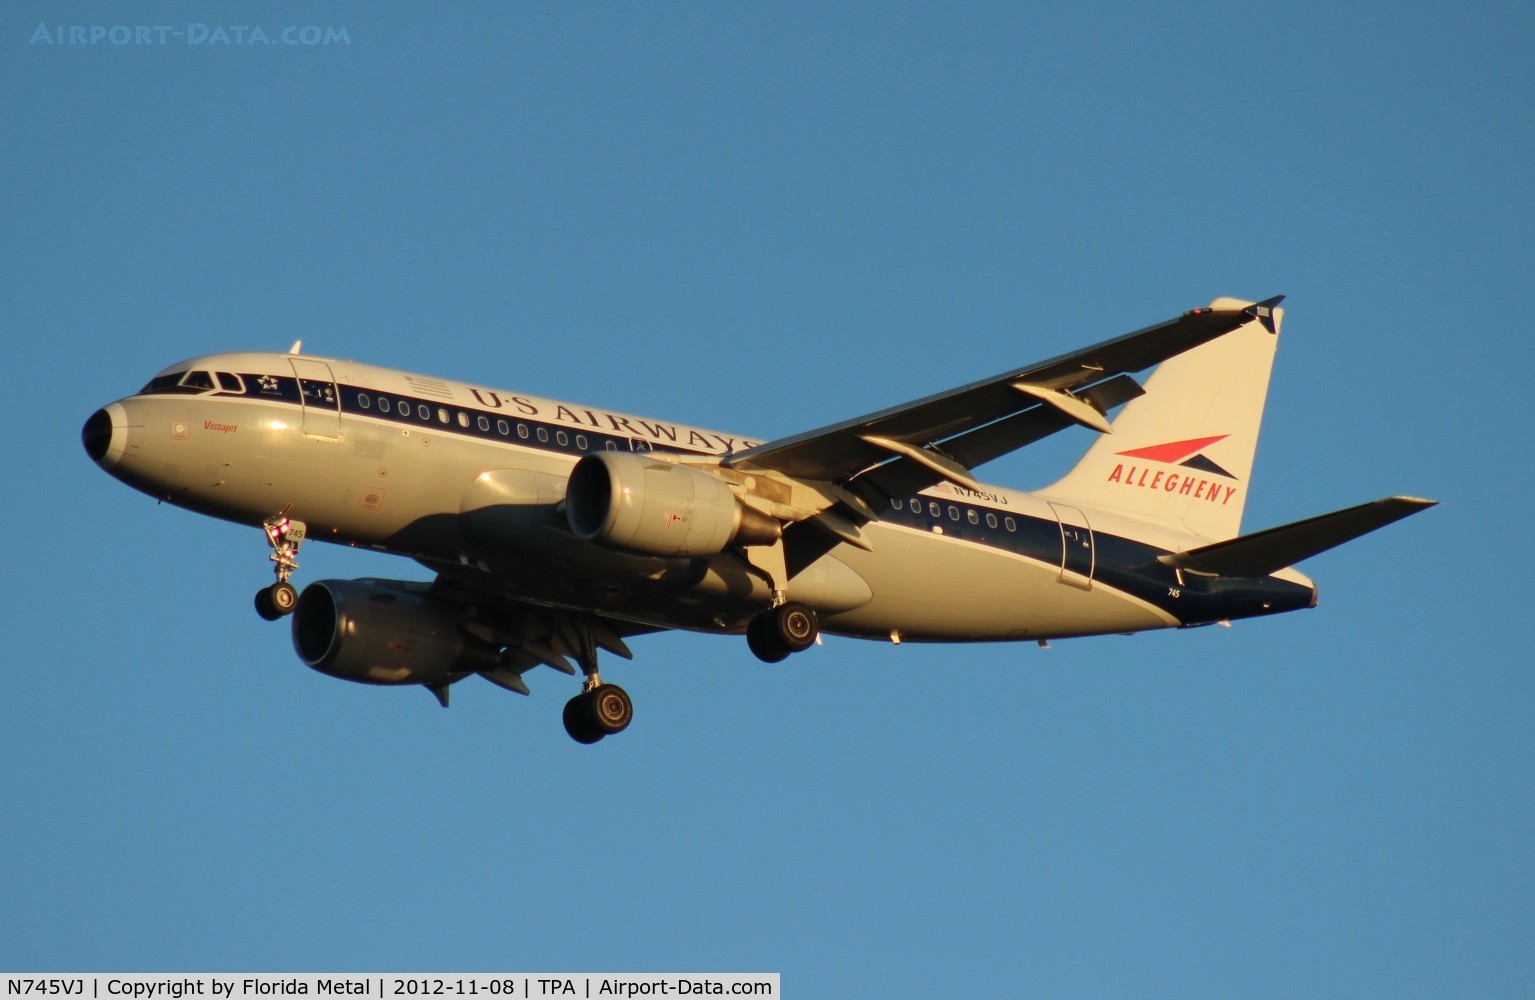 N745VJ, 2000 Airbus A319-112 C/N 1289, USAirways Allegheny A319